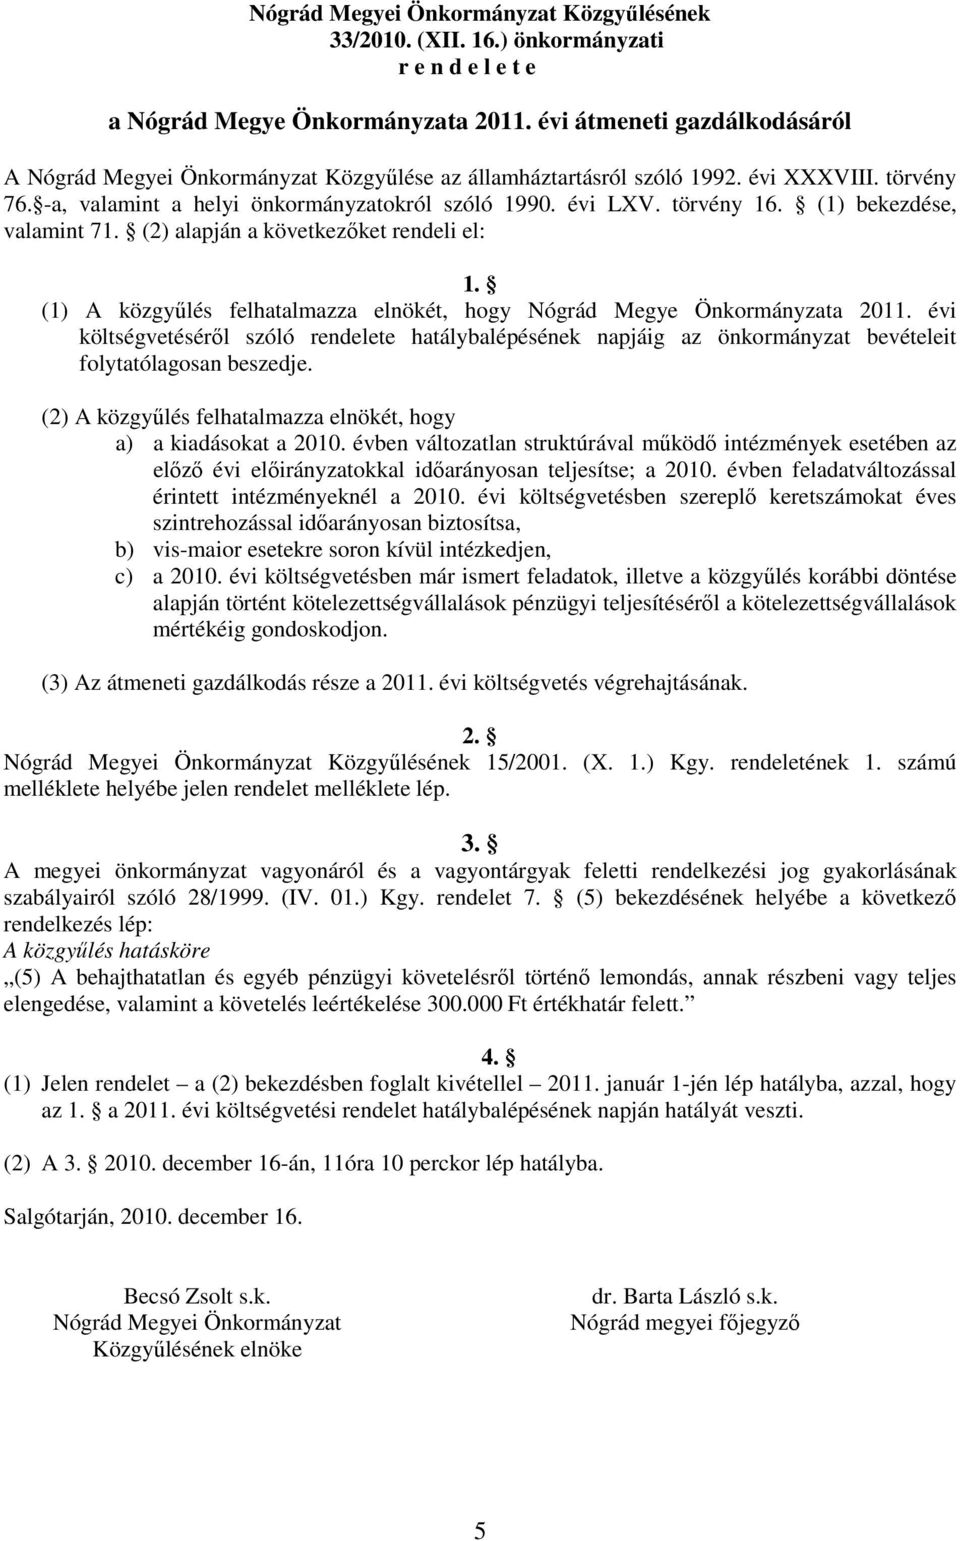 (1) bekezdése, valamint 71. (2) alapján a következőket rendeli el: 1. (1) A közgyűlés felhatalmazza elnökét, hogy Nógrád Megye Önkormányzata 2011.